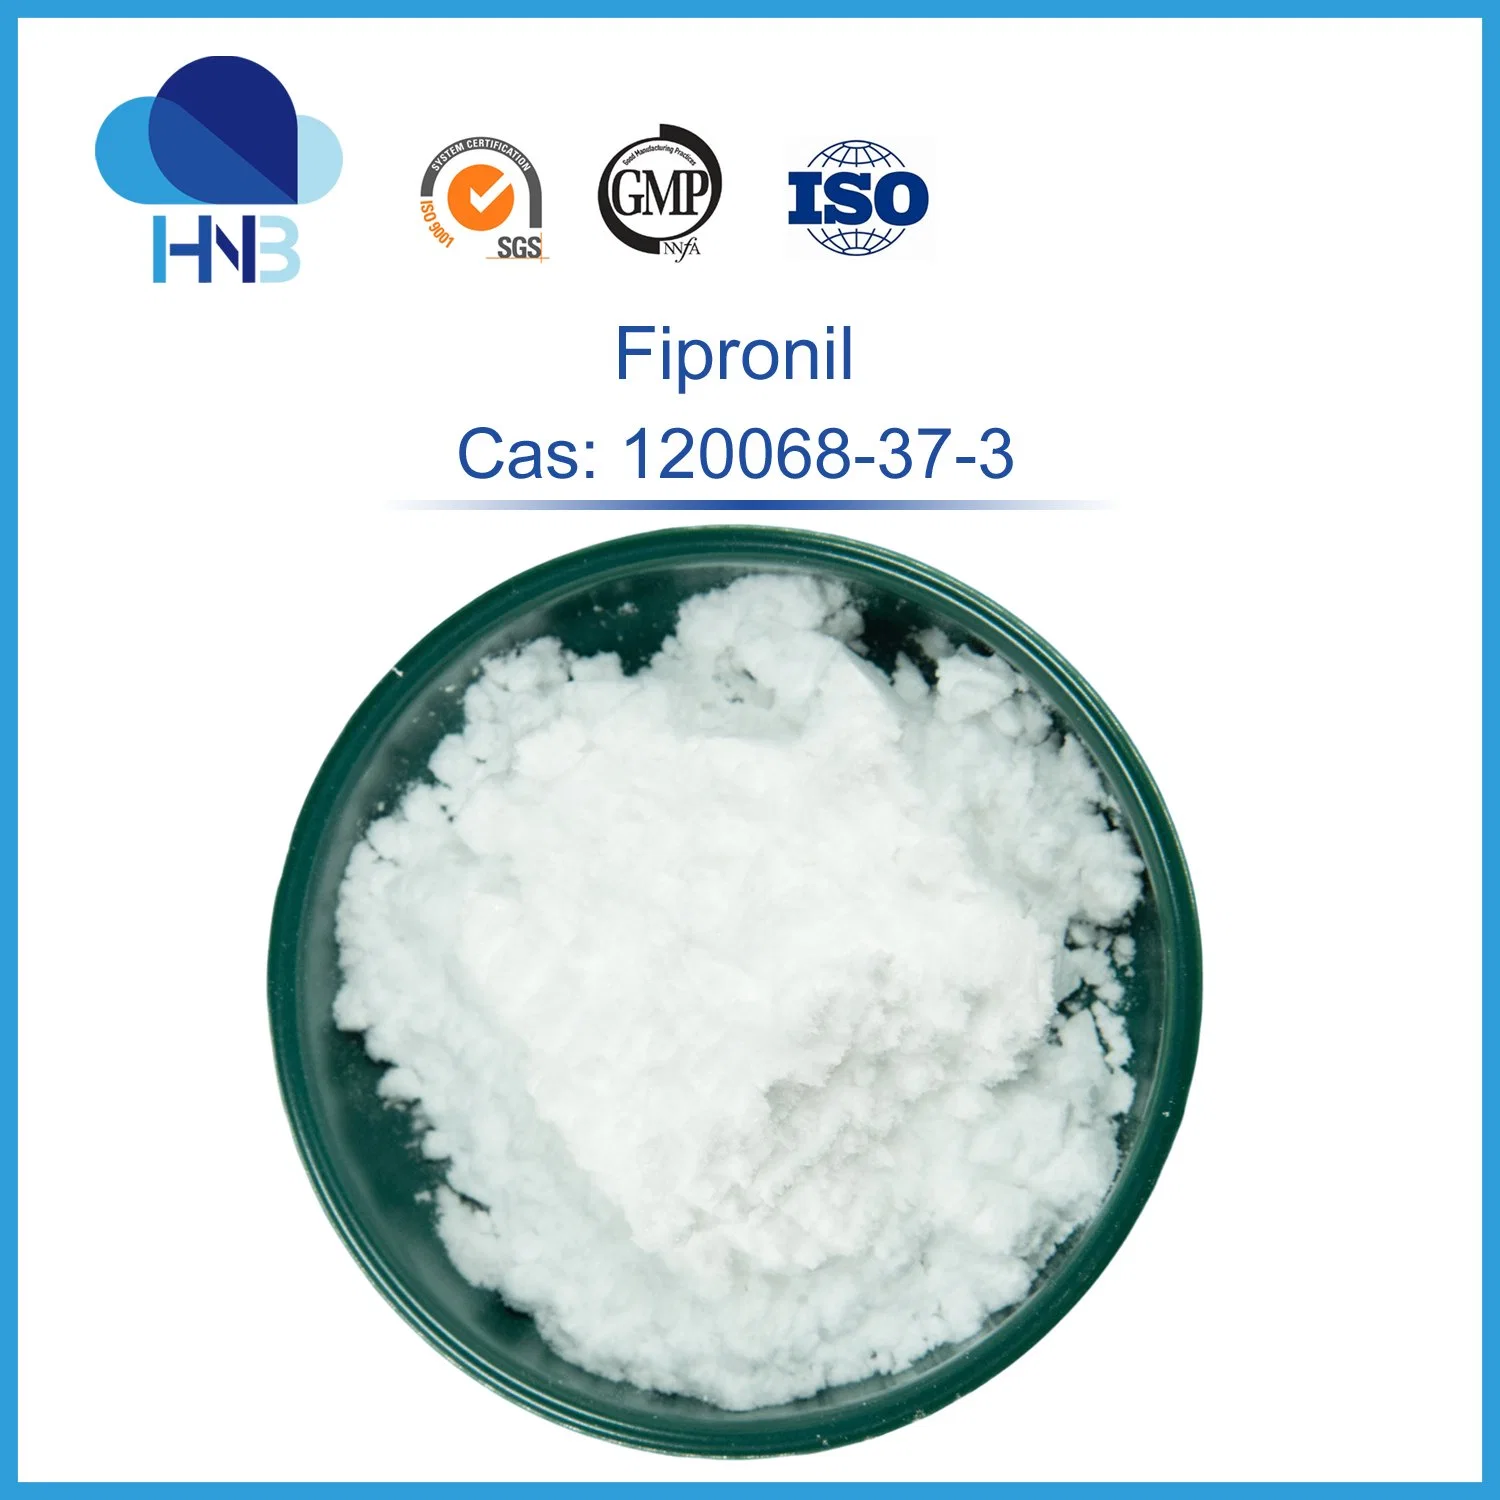 CAS 120068-37-3 hochreines Insektizid Fipronil